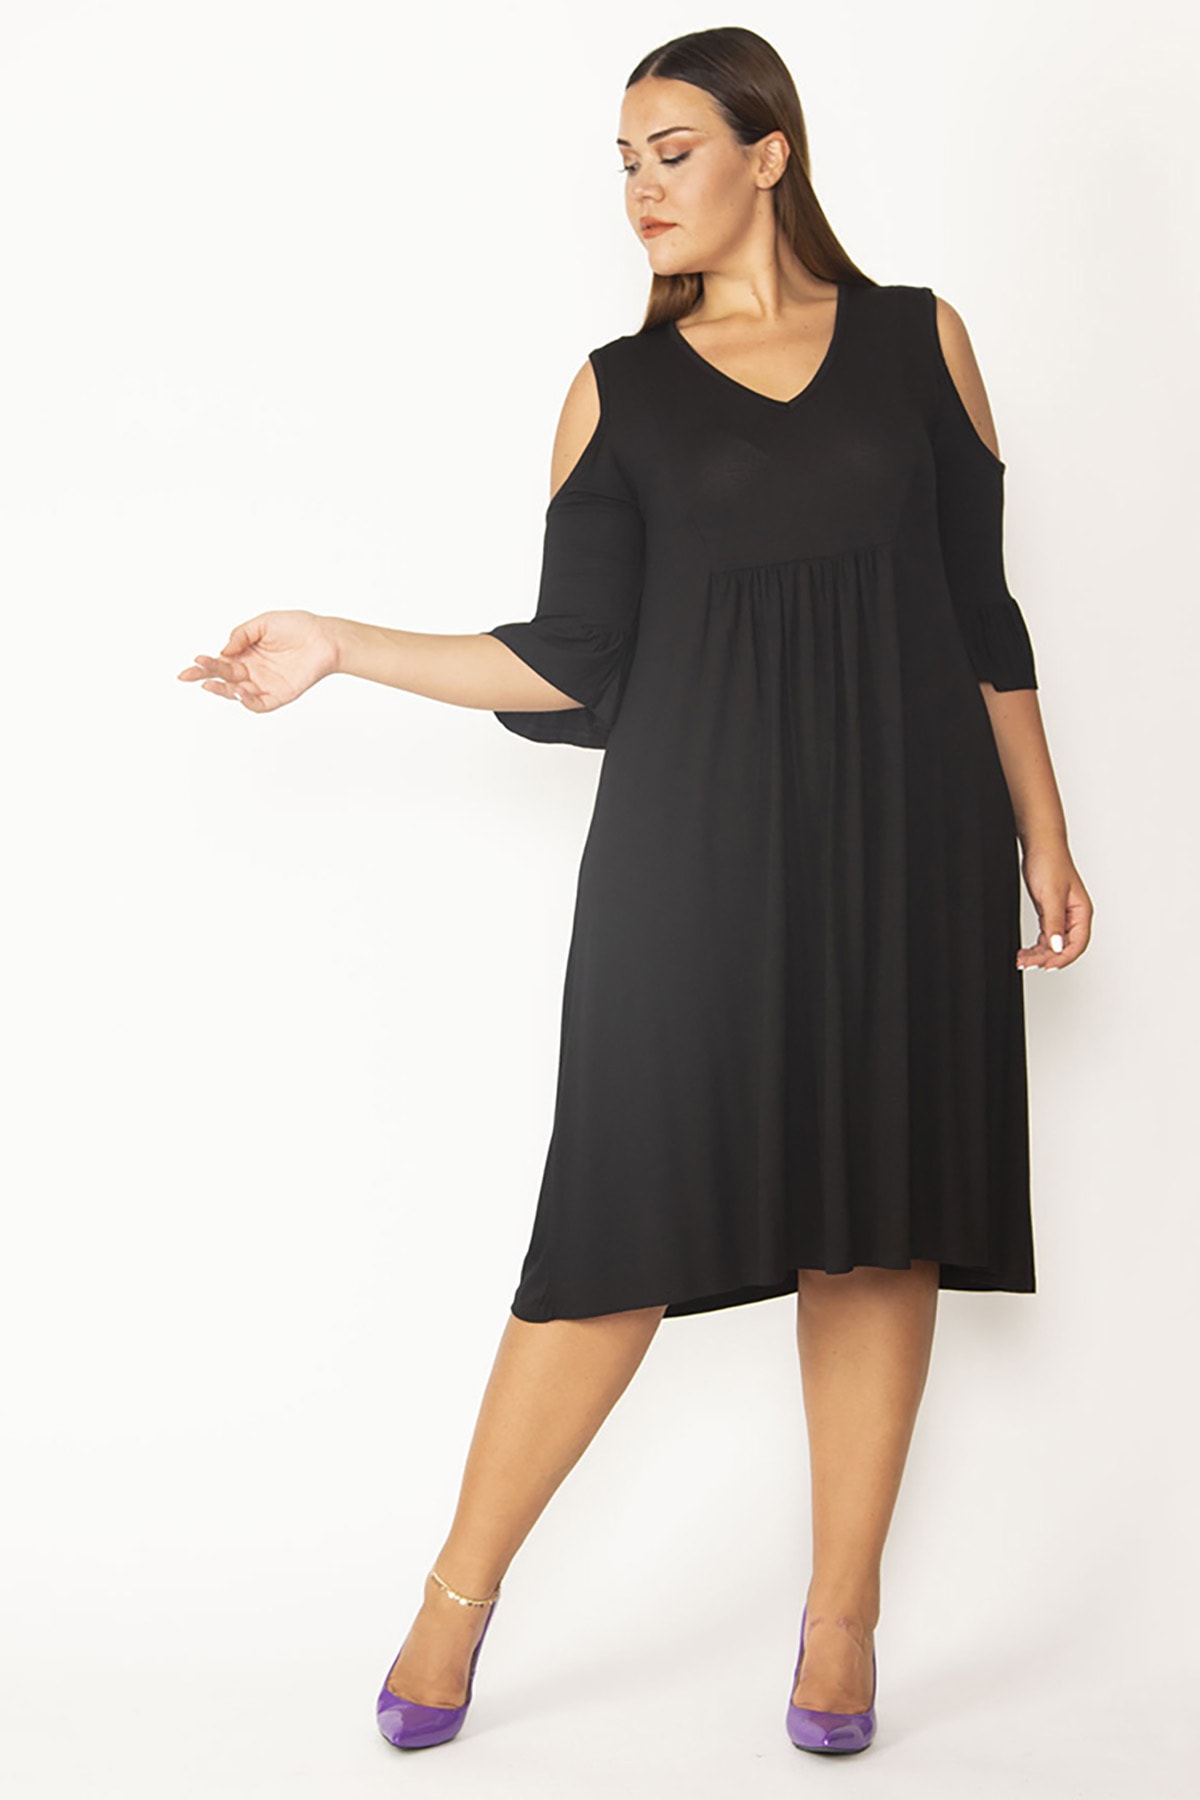 Levně Şans Women's Plus Size Black Viscose Dress With Decollete, Bust Gathering And Flounces Detail.